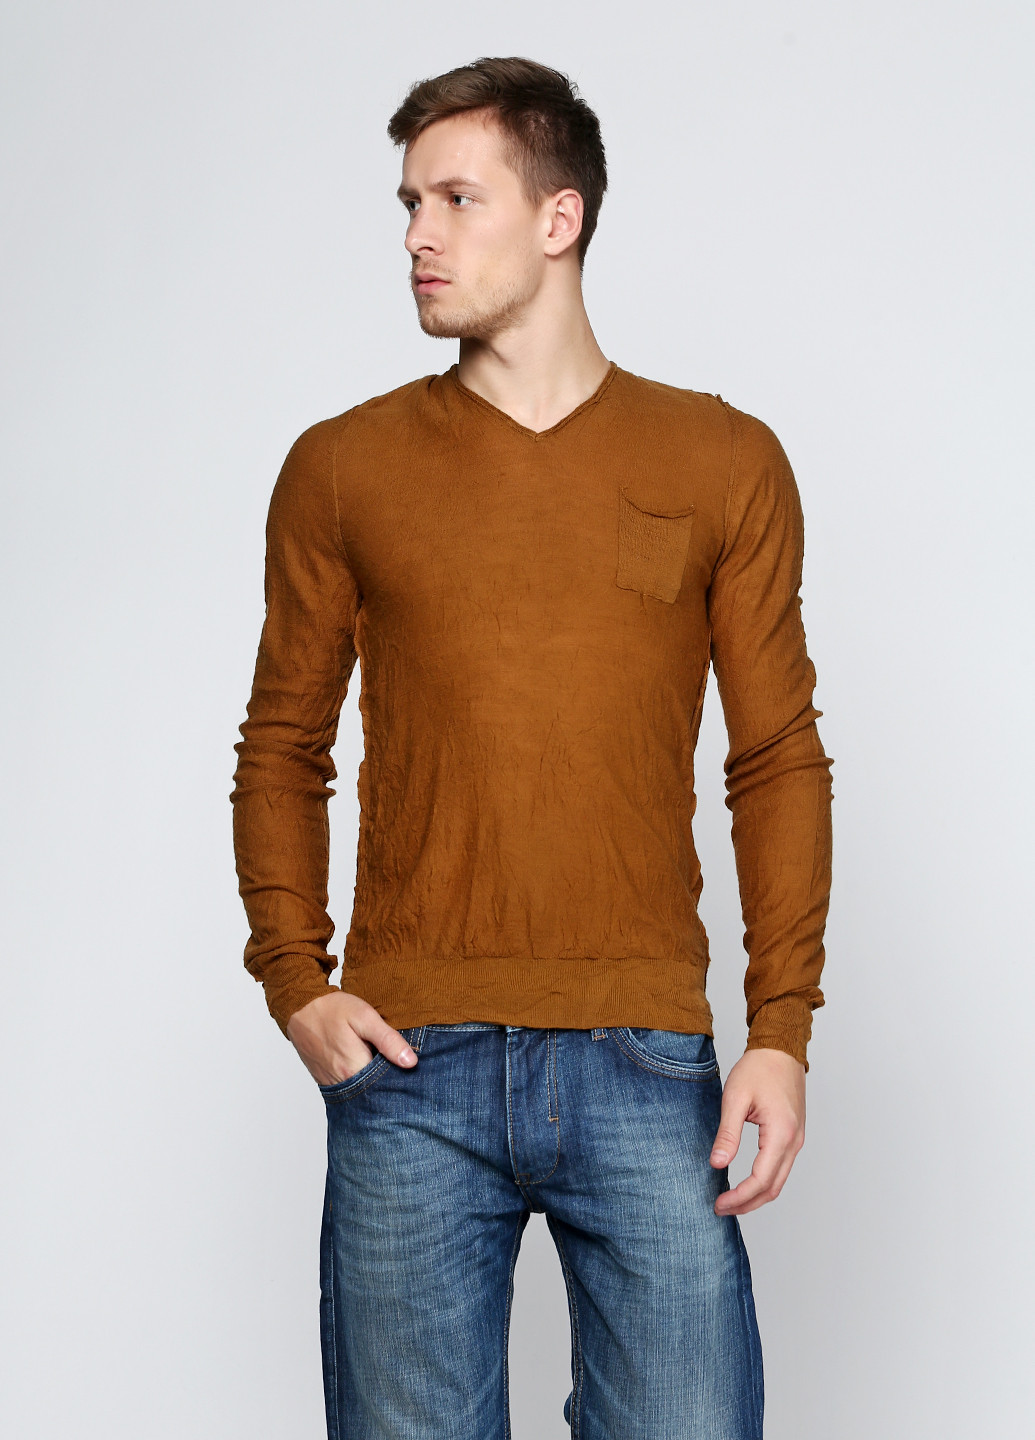 Коричневый демисезонный пуловер пуловер Antony Morato